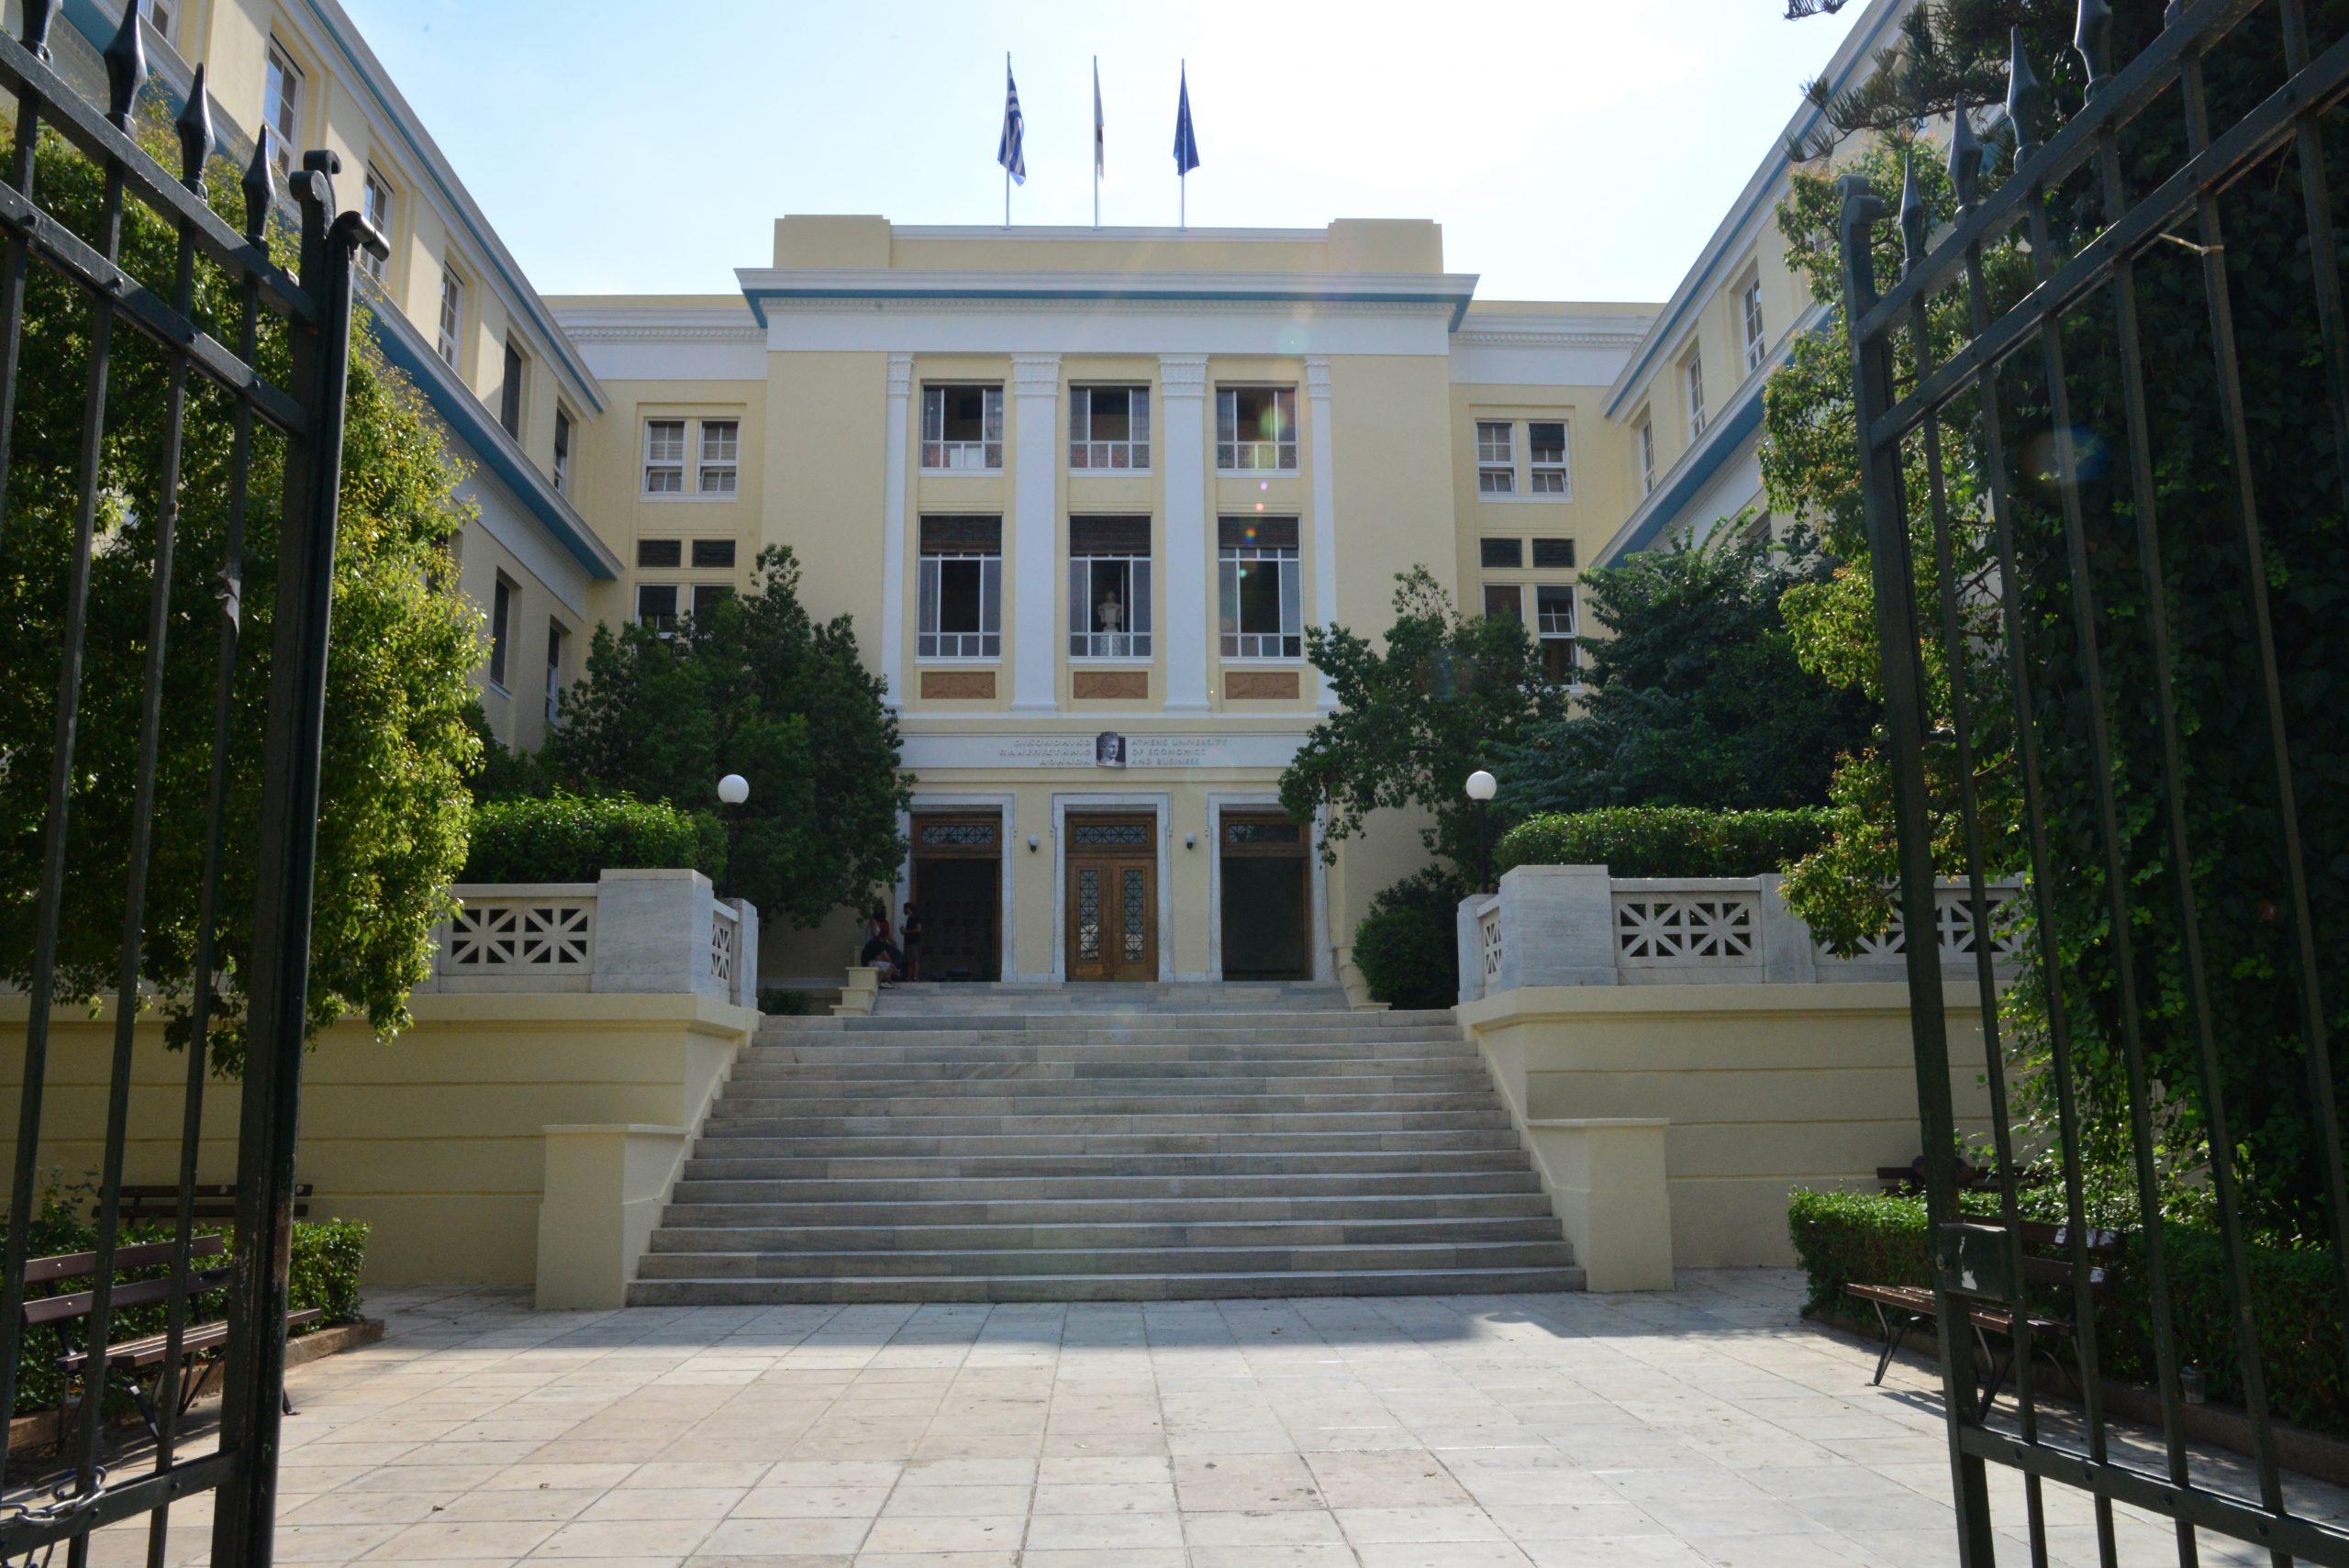 ΟΠΑ: Νέα διεθνής αναγνώριση του Οικονομικού Πανεπιστημίου Αθηνών για το 2022